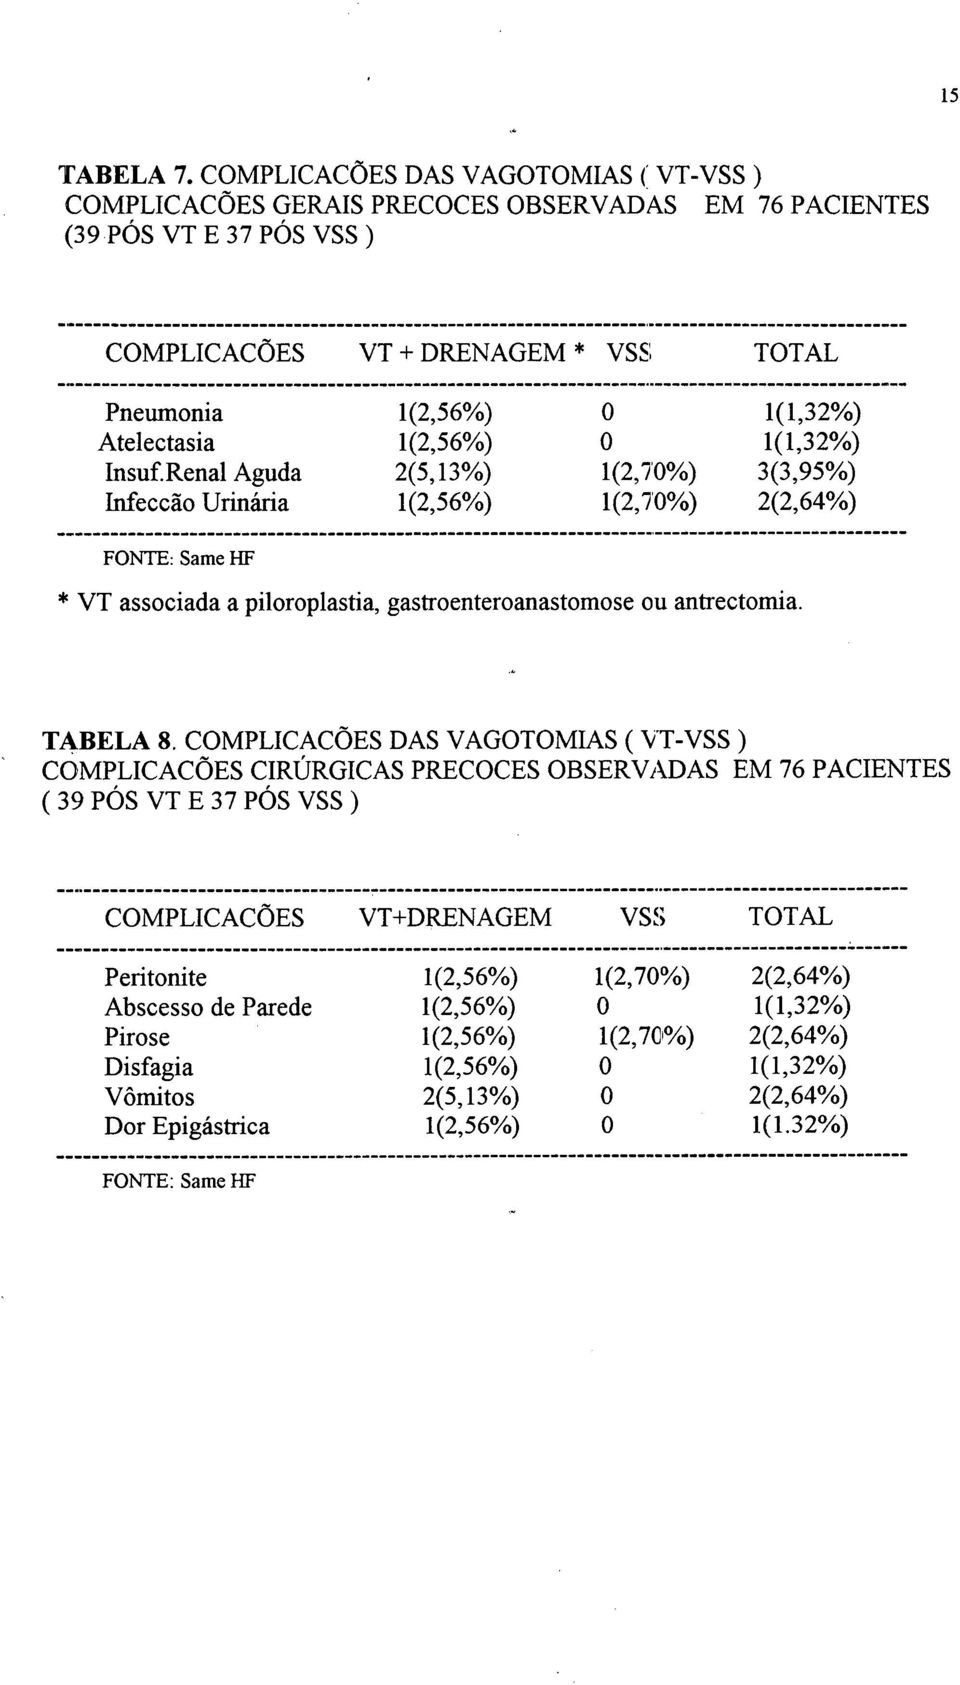 Renal Aguda 2(5, 13%) 1(2,7'0%) 3(3,95%) Infeccão Urinária 1(2,56%) 1(2,7'0%) 2(2,64%) FONTE: Same I-IF * VT associada a piloroplastia, gastroenteroanastomose ou antrectomia. ~ TABELA 8.